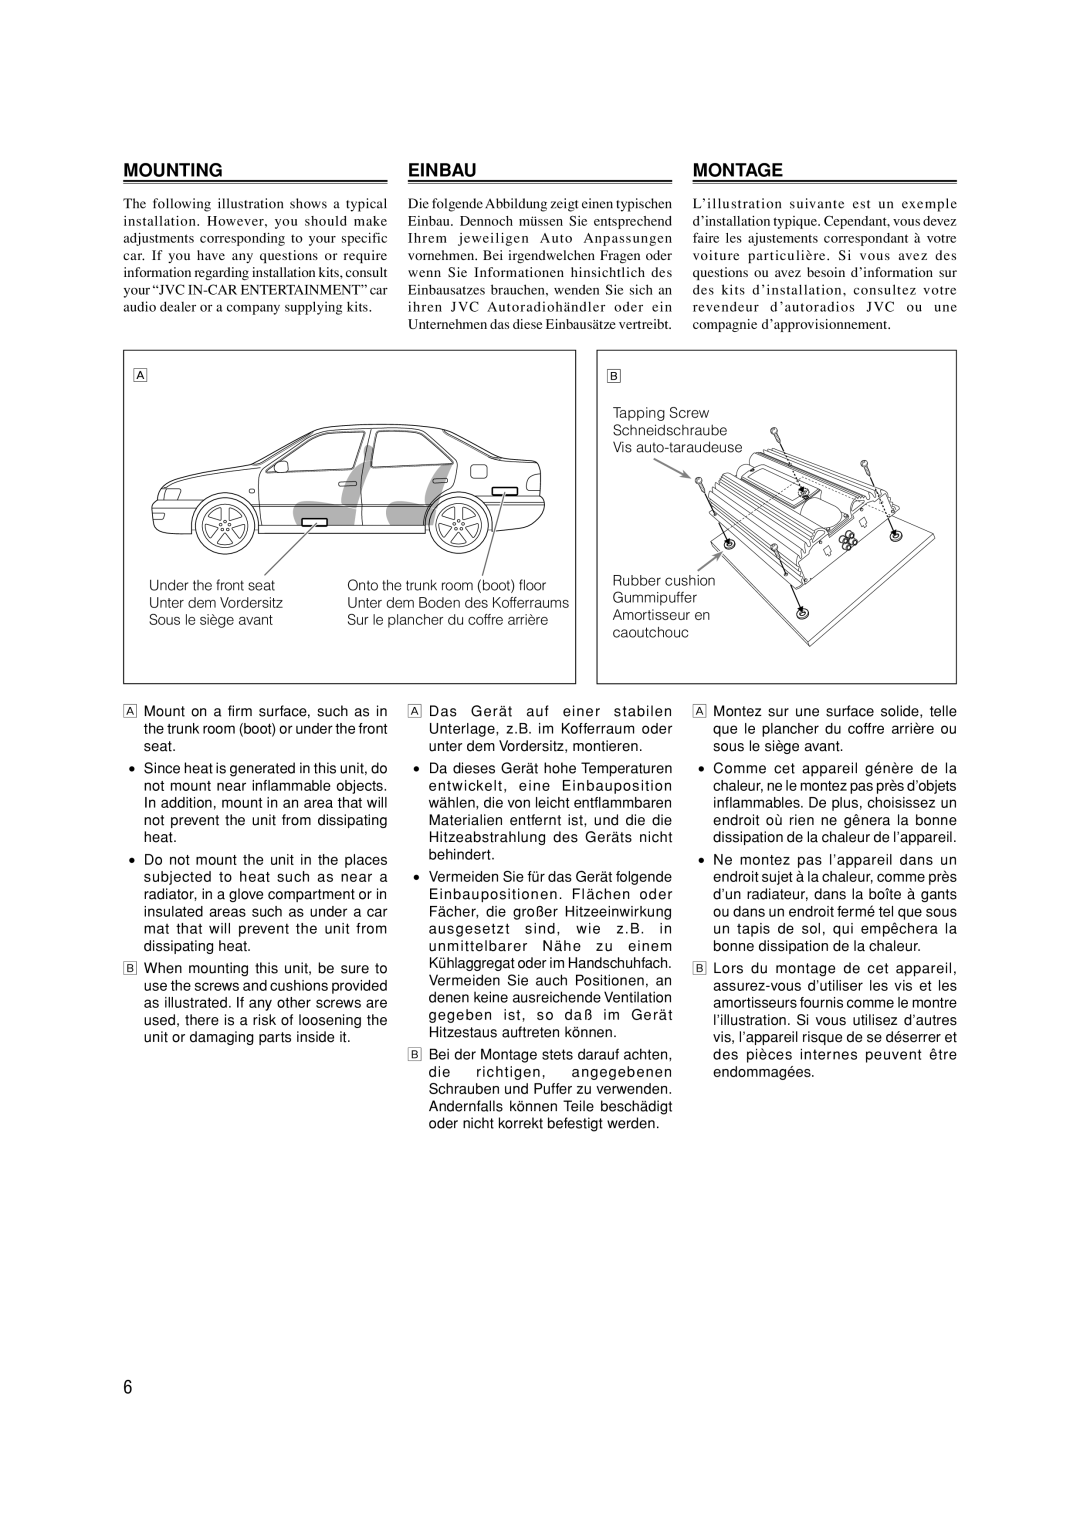 JVC KS-AX4550 manual Mounting, Einbau, Montage 